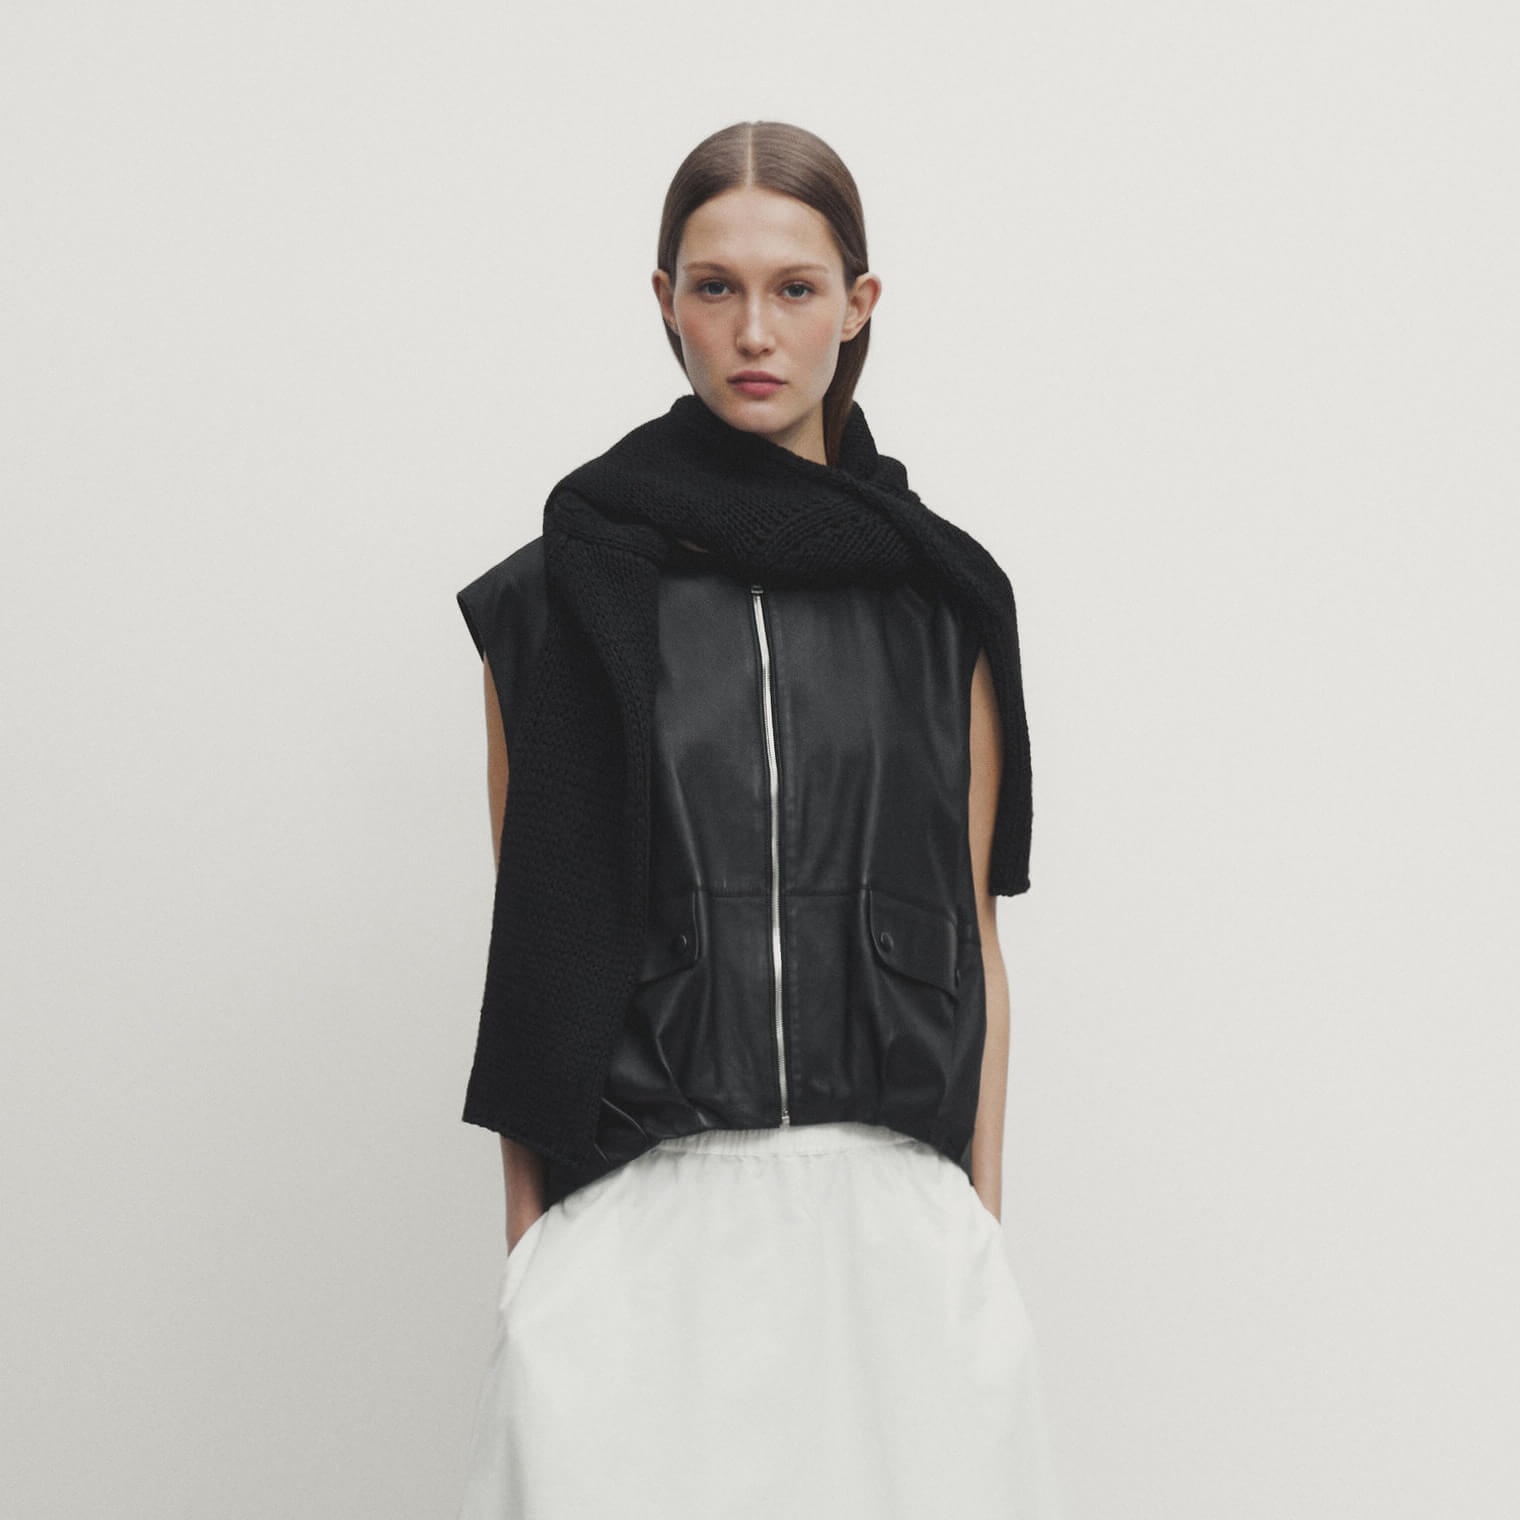 женский короткий жилет из пу кожи без рукавов на молнии Жилет Massimo Dutti Nappa Leather With Zip, черный